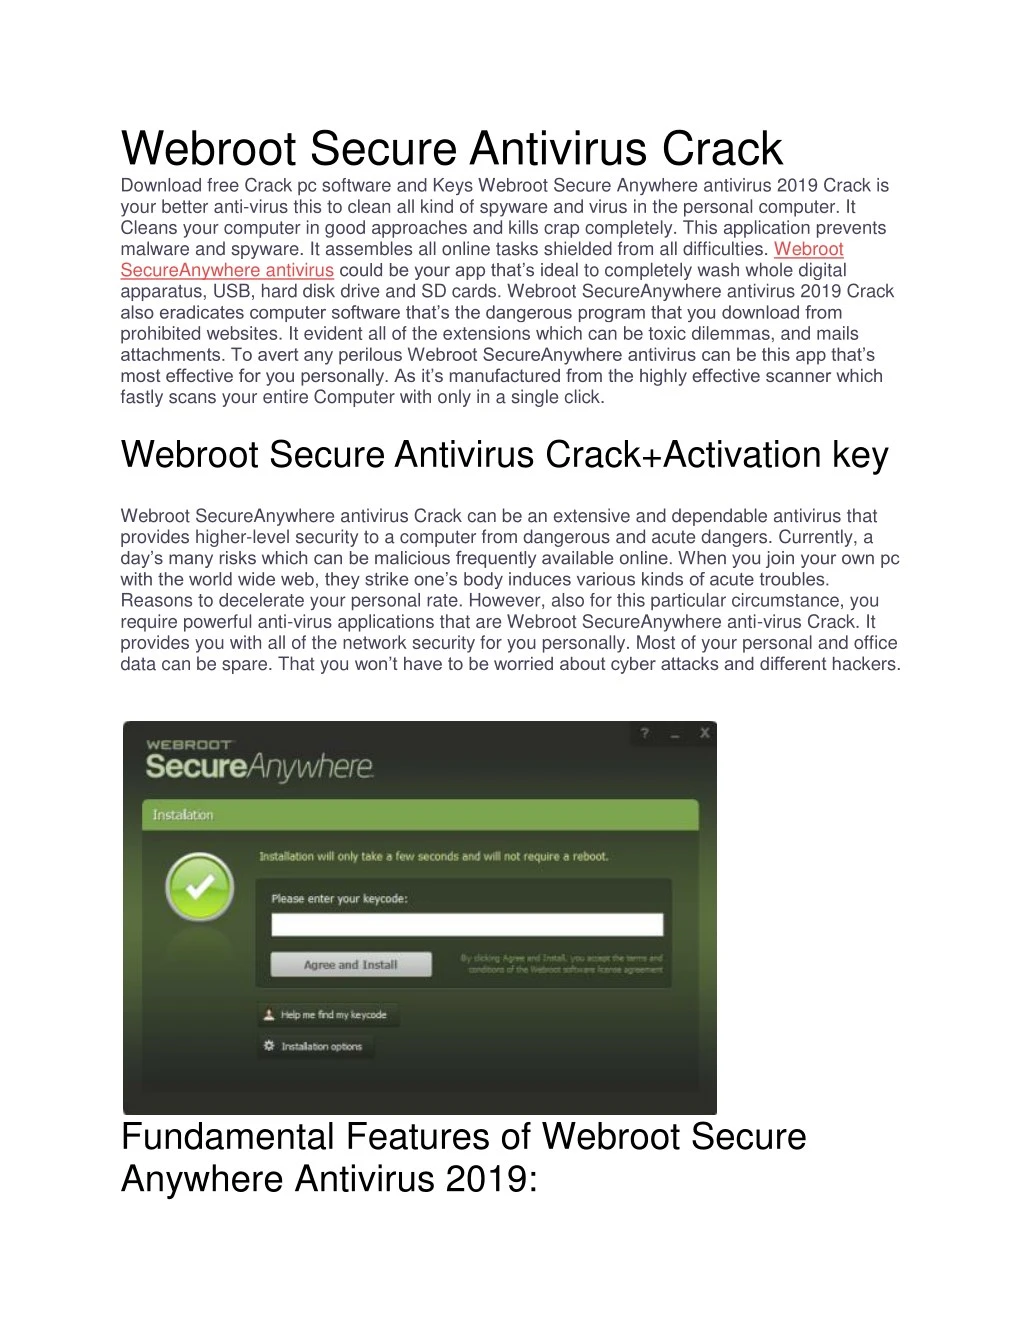 webroot secure antivirus crack download free